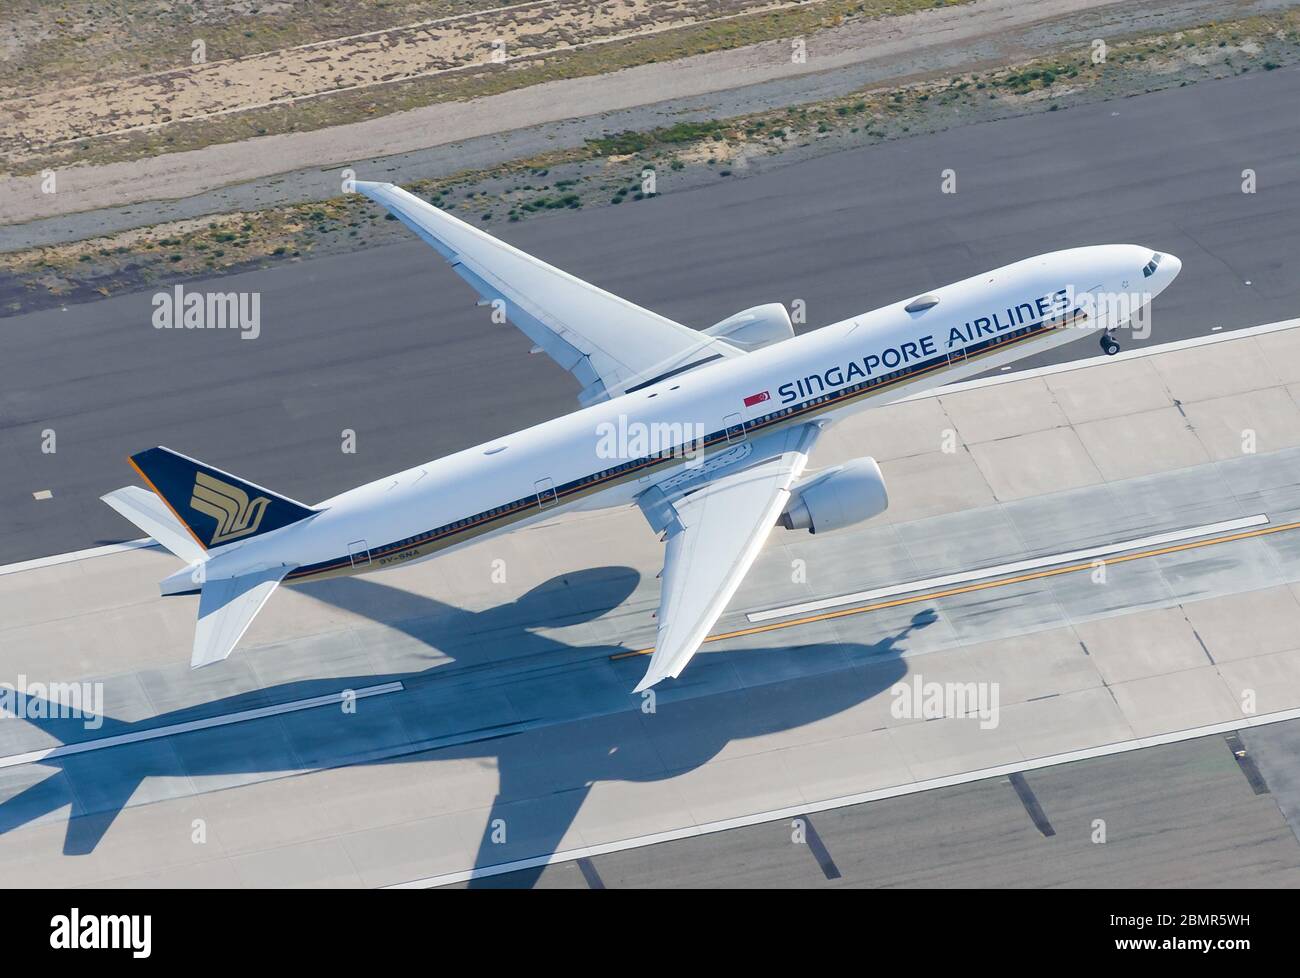 Singapore Airlines Boeing 777 startet mit der Start- und Landebahn des LAX International Airport. Luftaufnahme des B777 oder 77W-Strahls, der aus einer Luftaufnahme mit hohem Winkel abgeht. Stockfoto